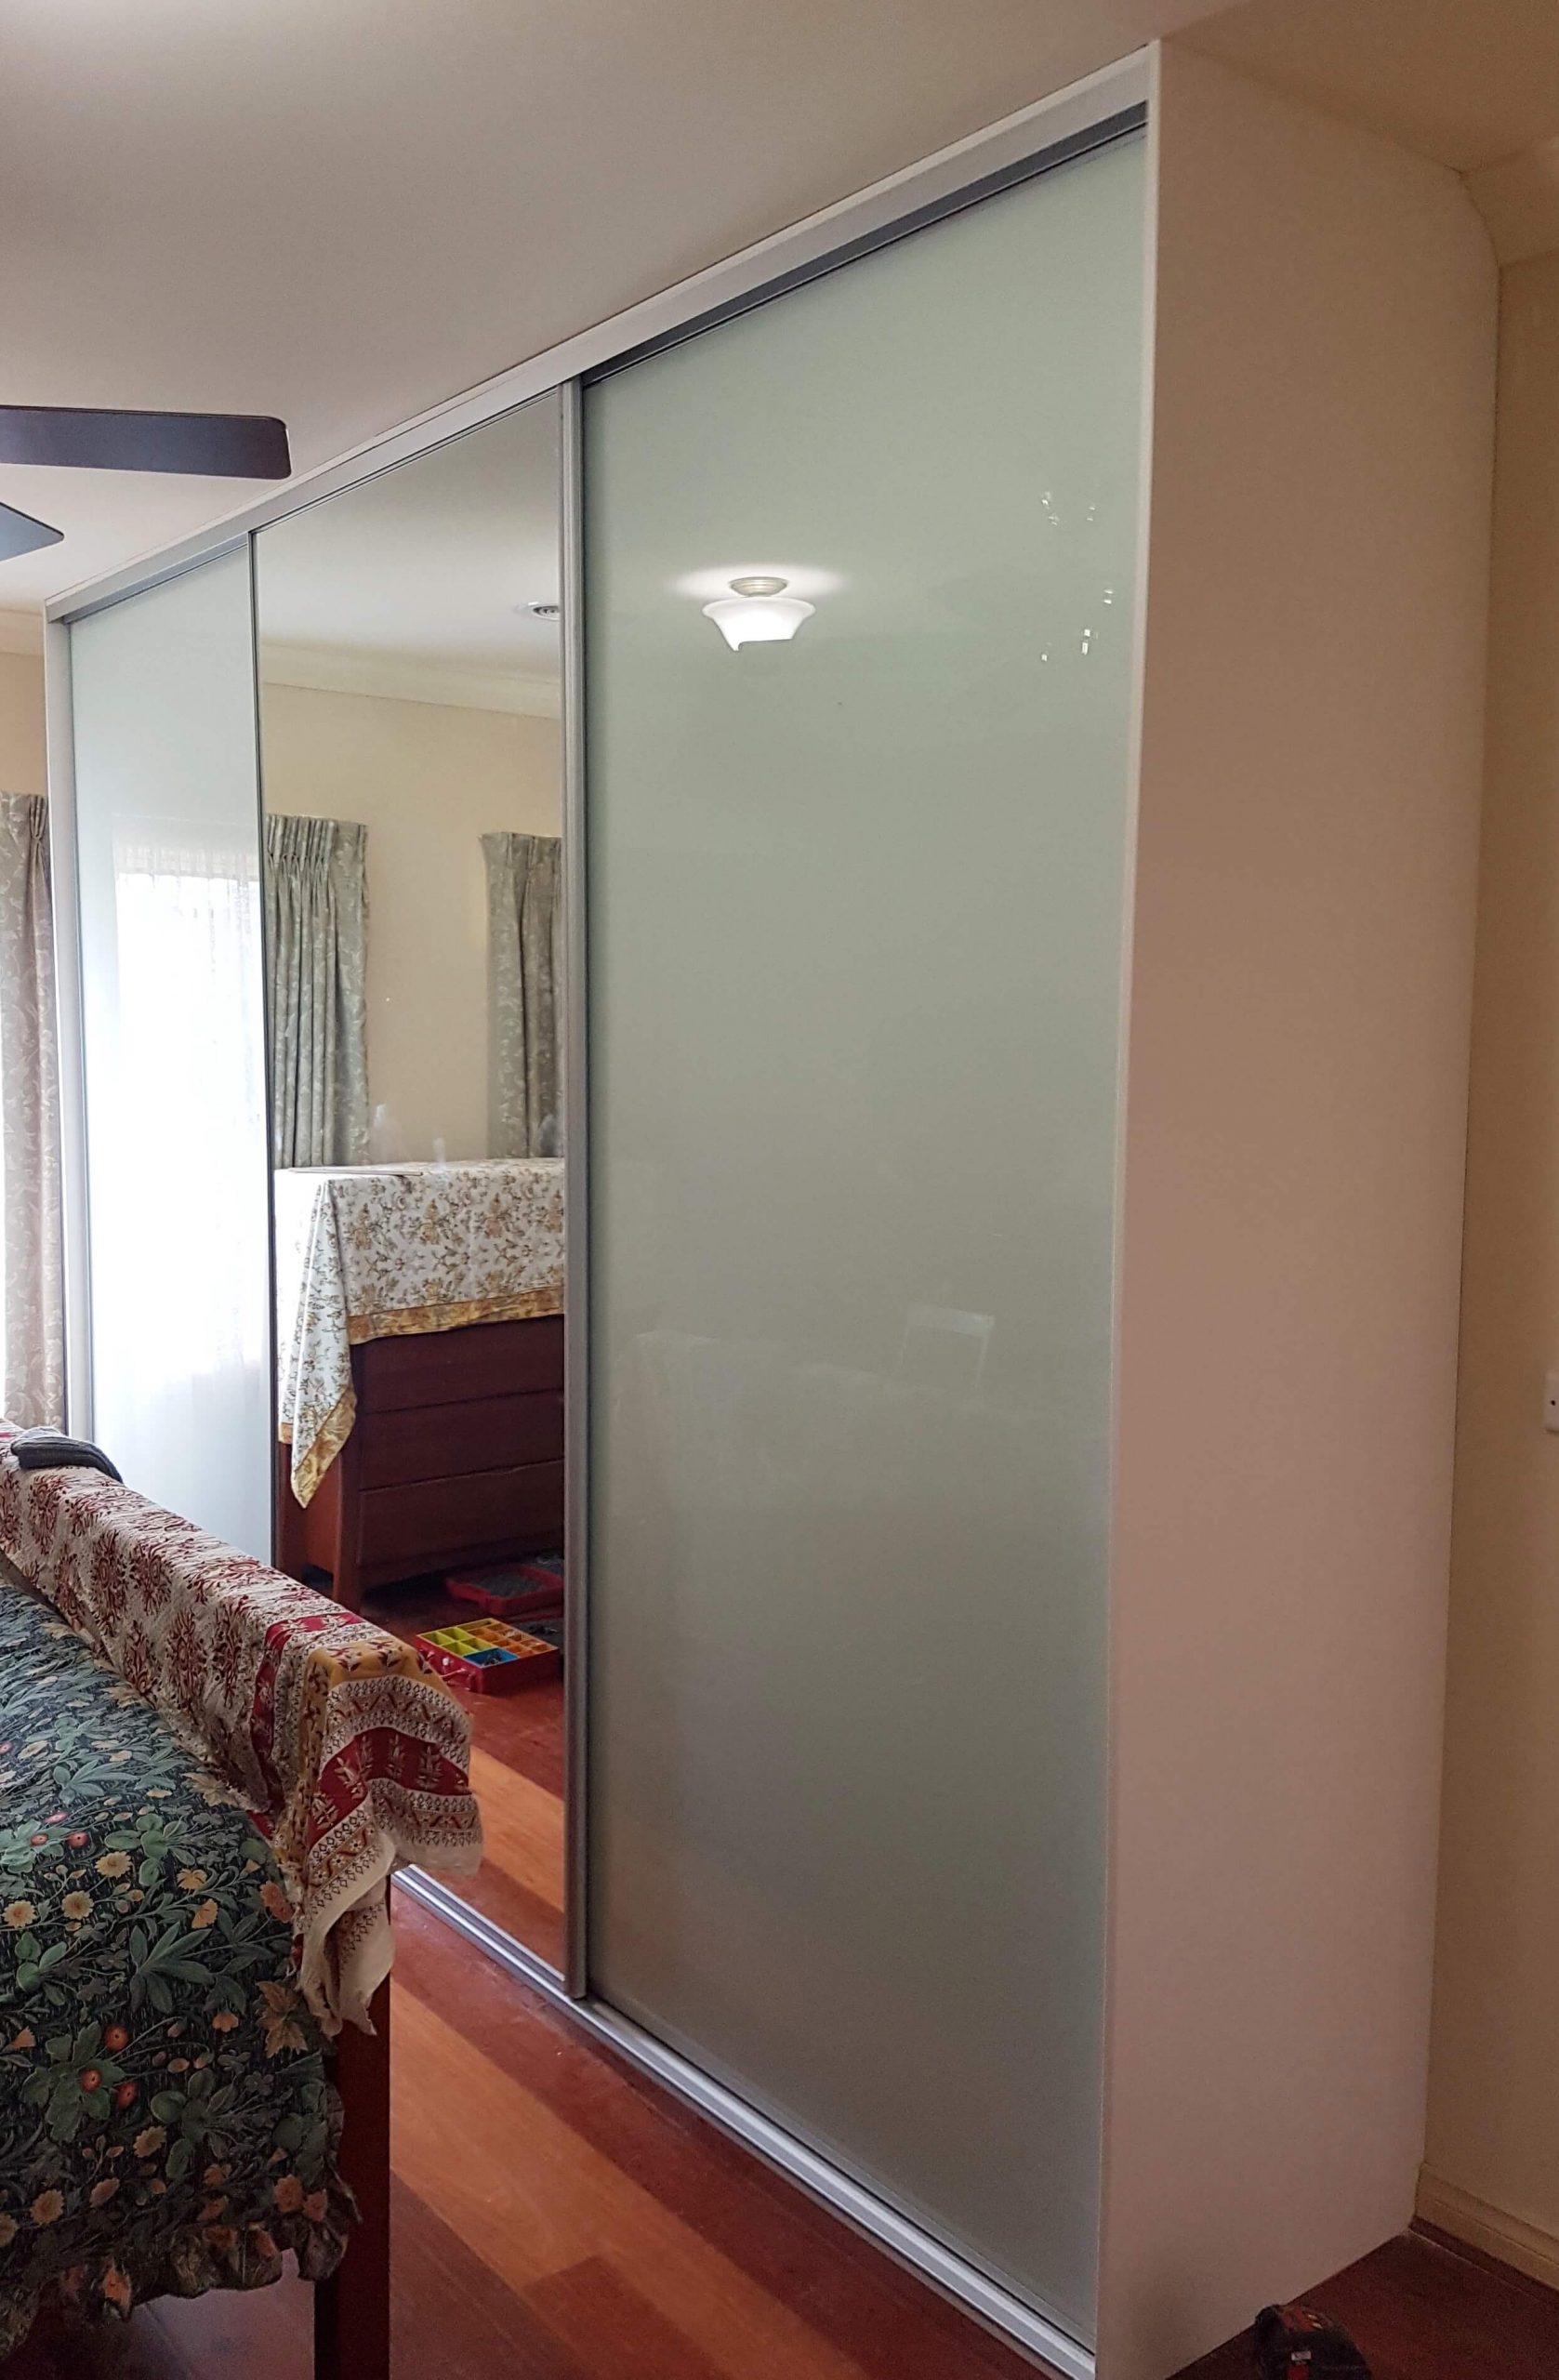 Sliding wardrobe doors in white glass framed mirror doors